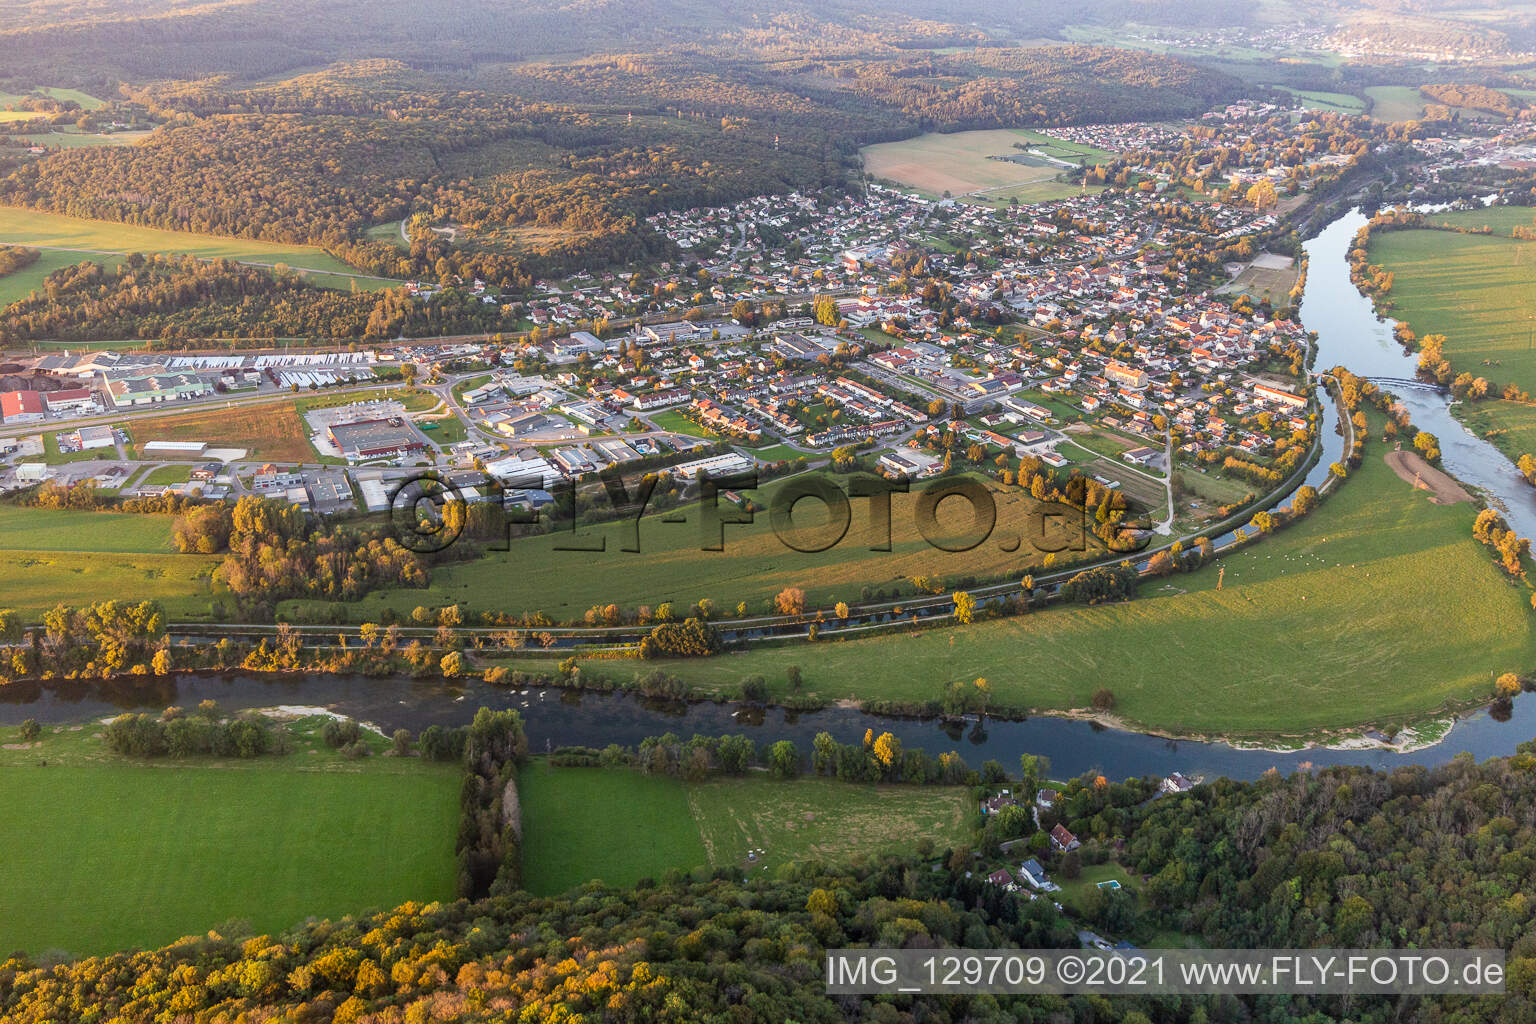 Photographie aérienne de Roche-lez-Beaupré dans le département Doubs, France